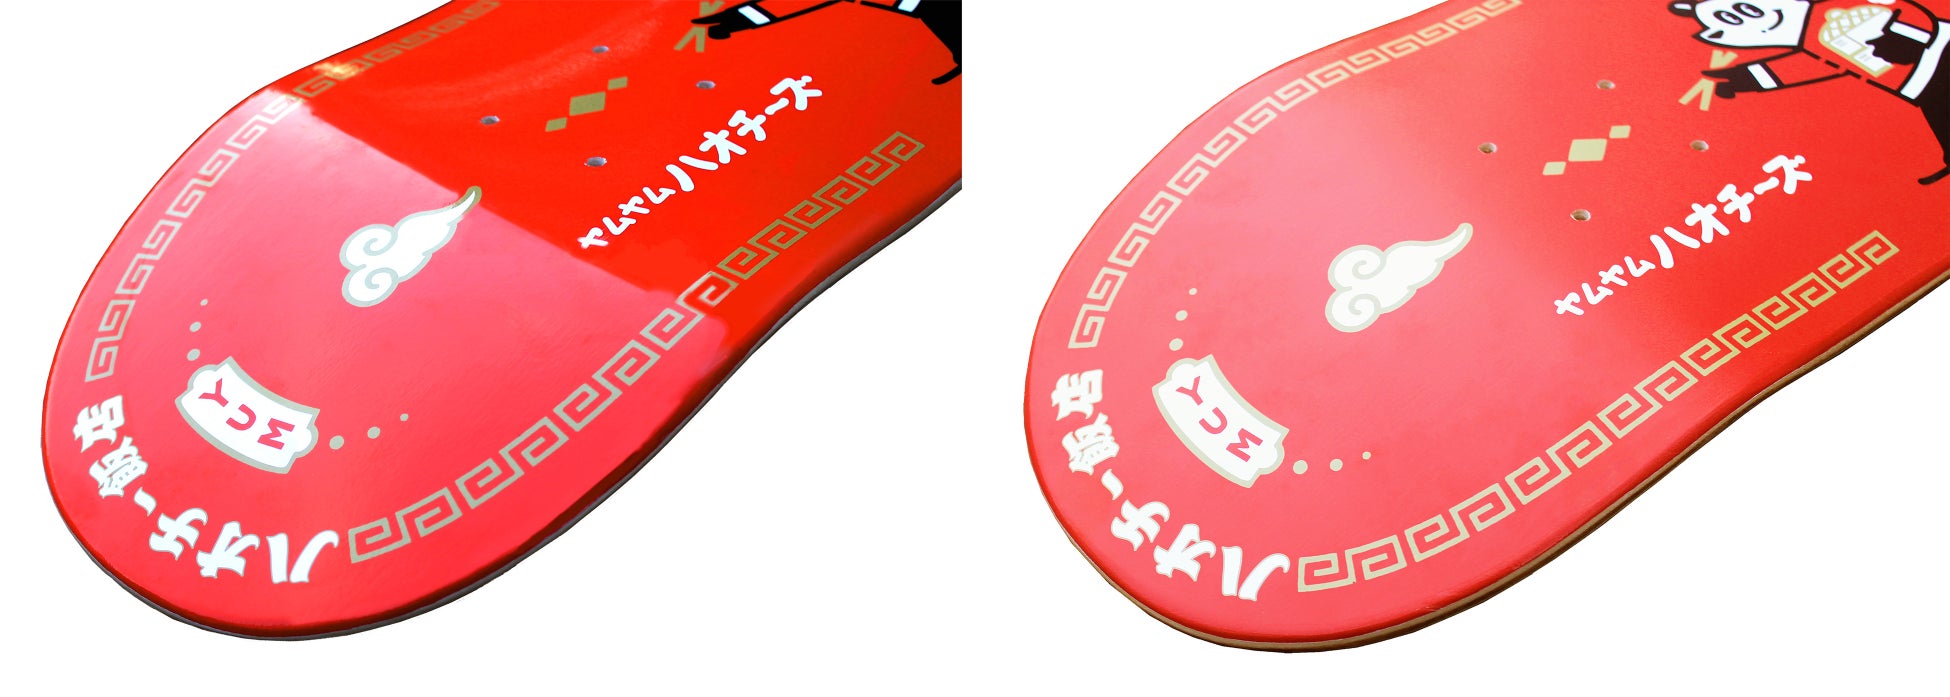 グローブライド、ピックルボール日本国内市場に参入　
「DIADEM SPORTS」の日本国内販売を4月より開始